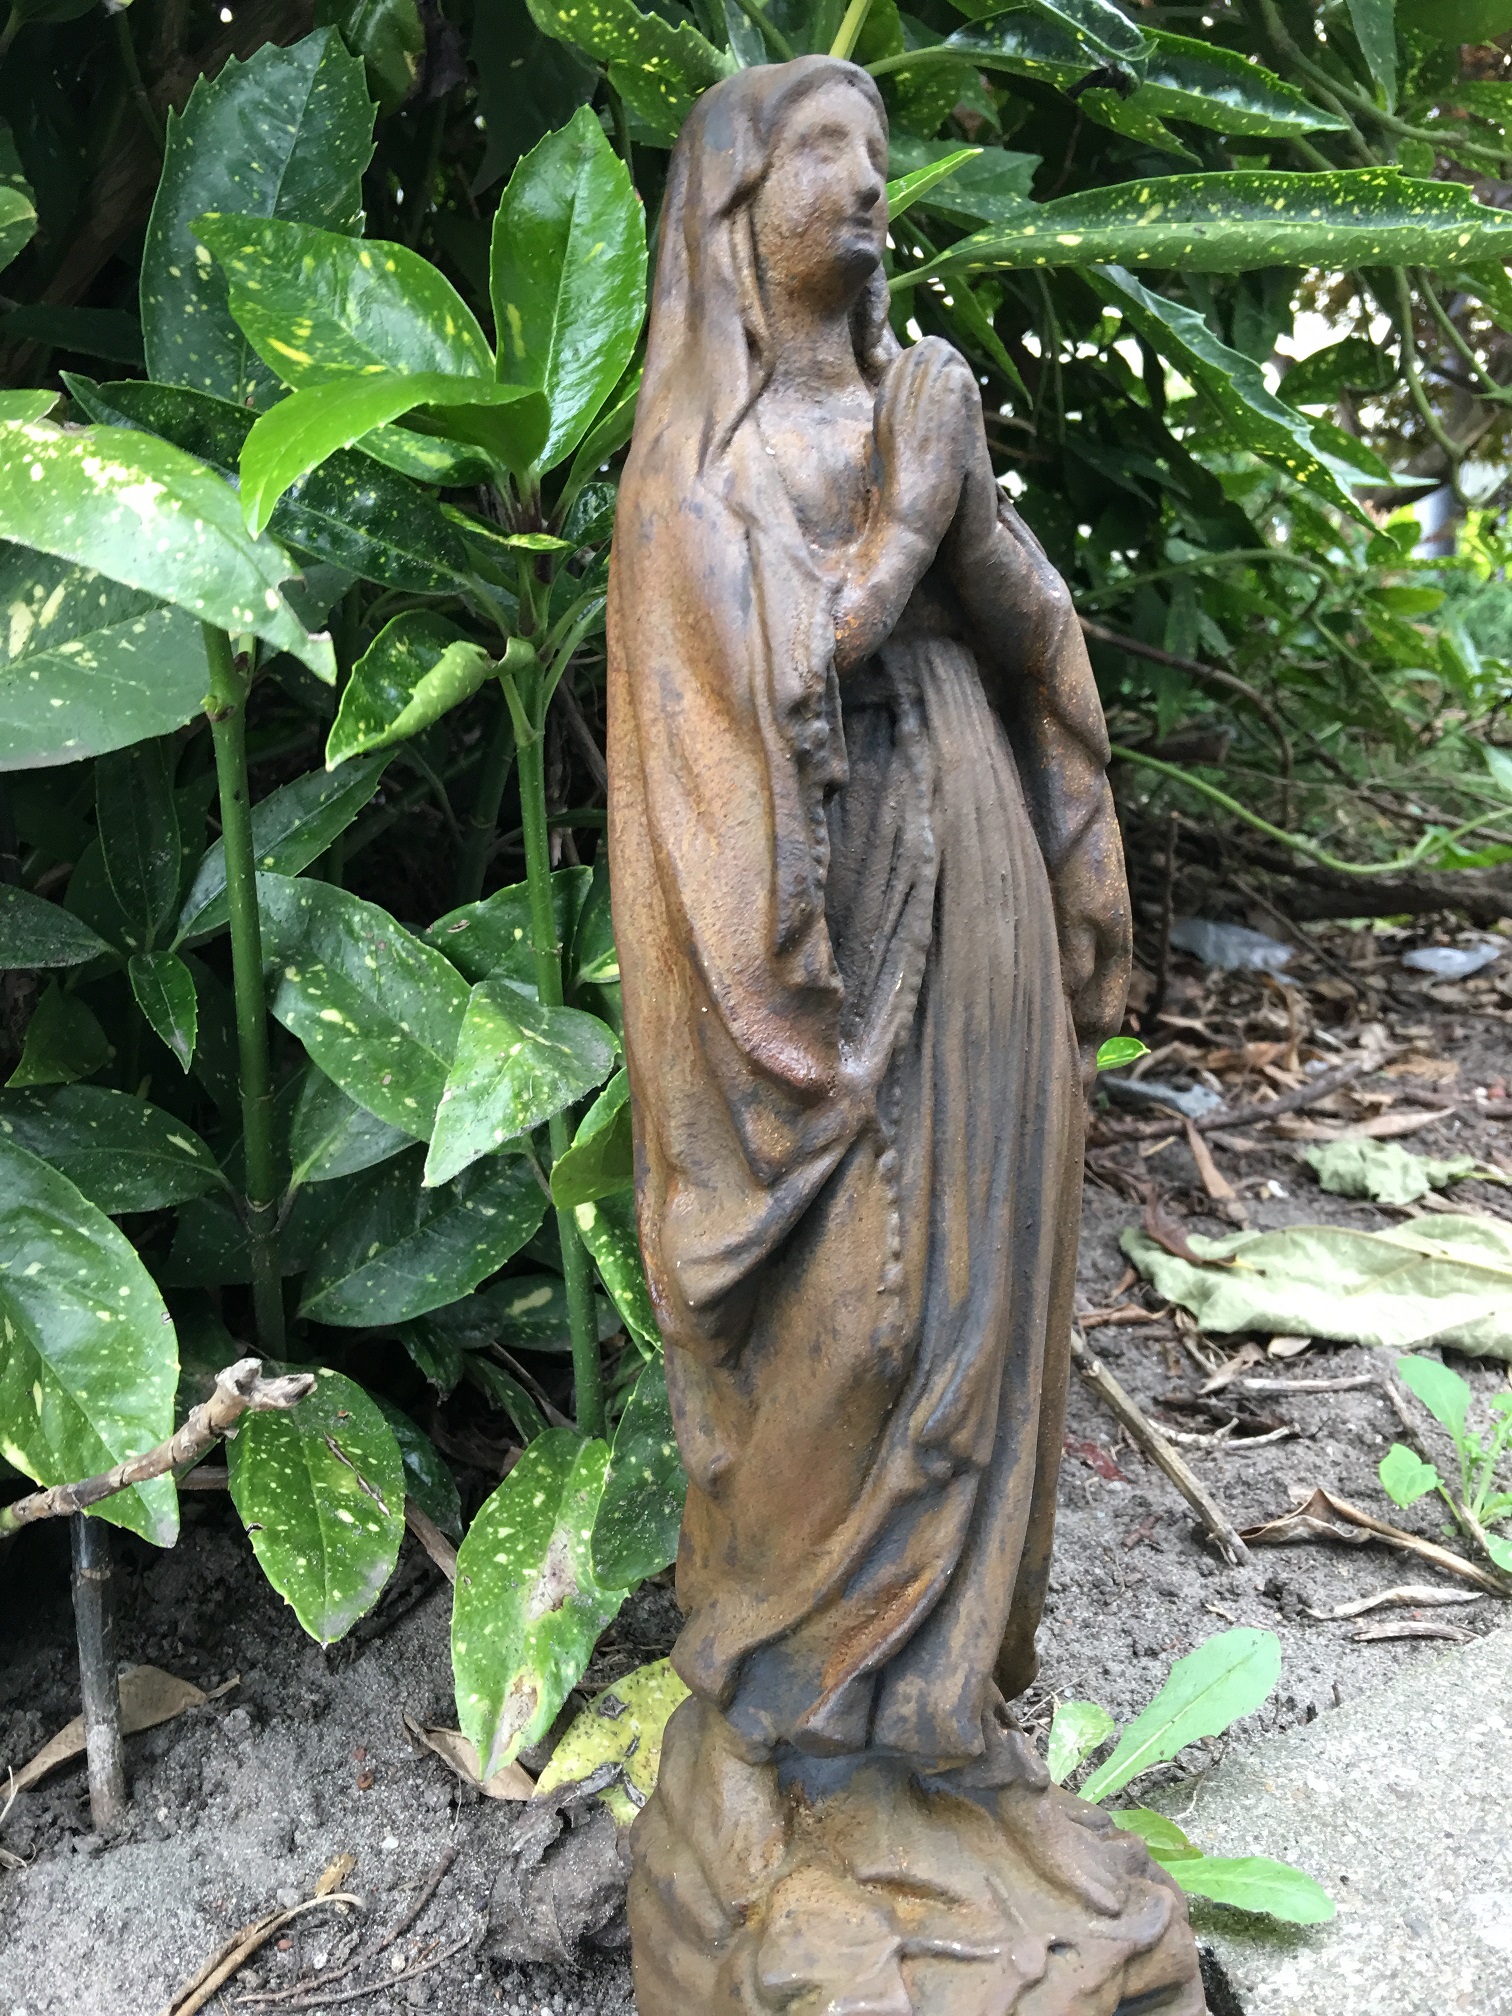 Statue der Jungfrau Maria voller Stein, schön im Detail, Farbe oxid